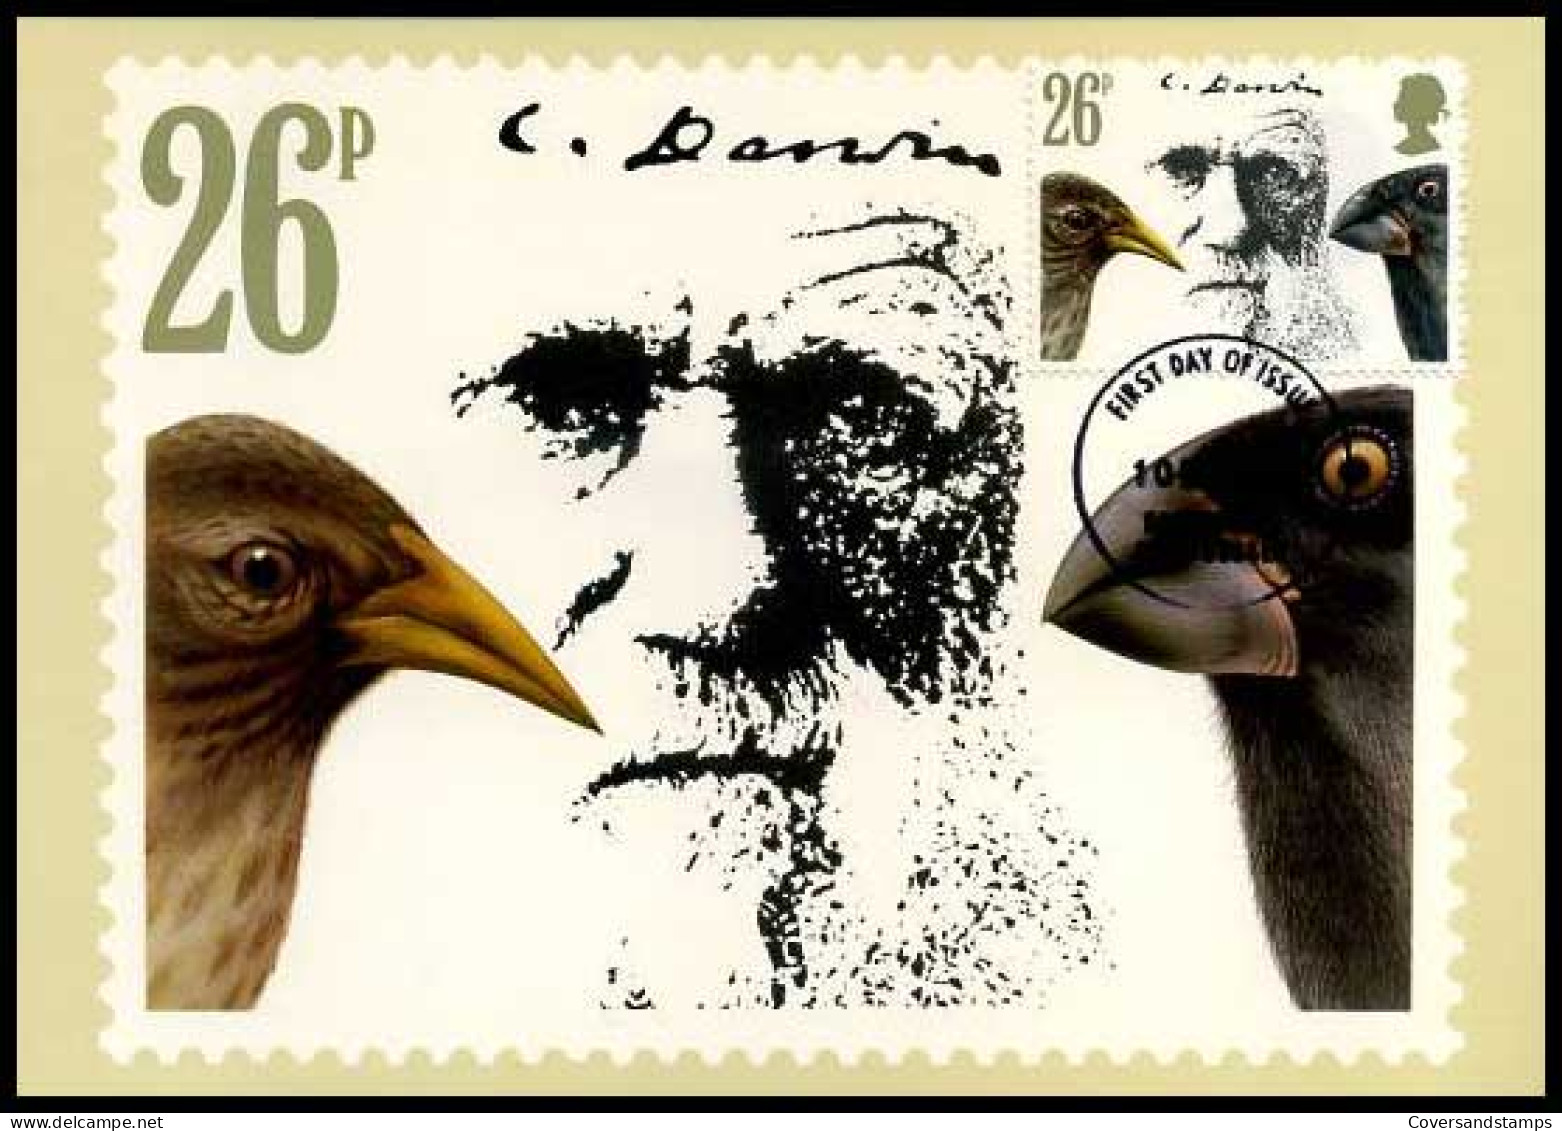 Groot-Britannië - MK - Charles Darwin                               - Carte Massime